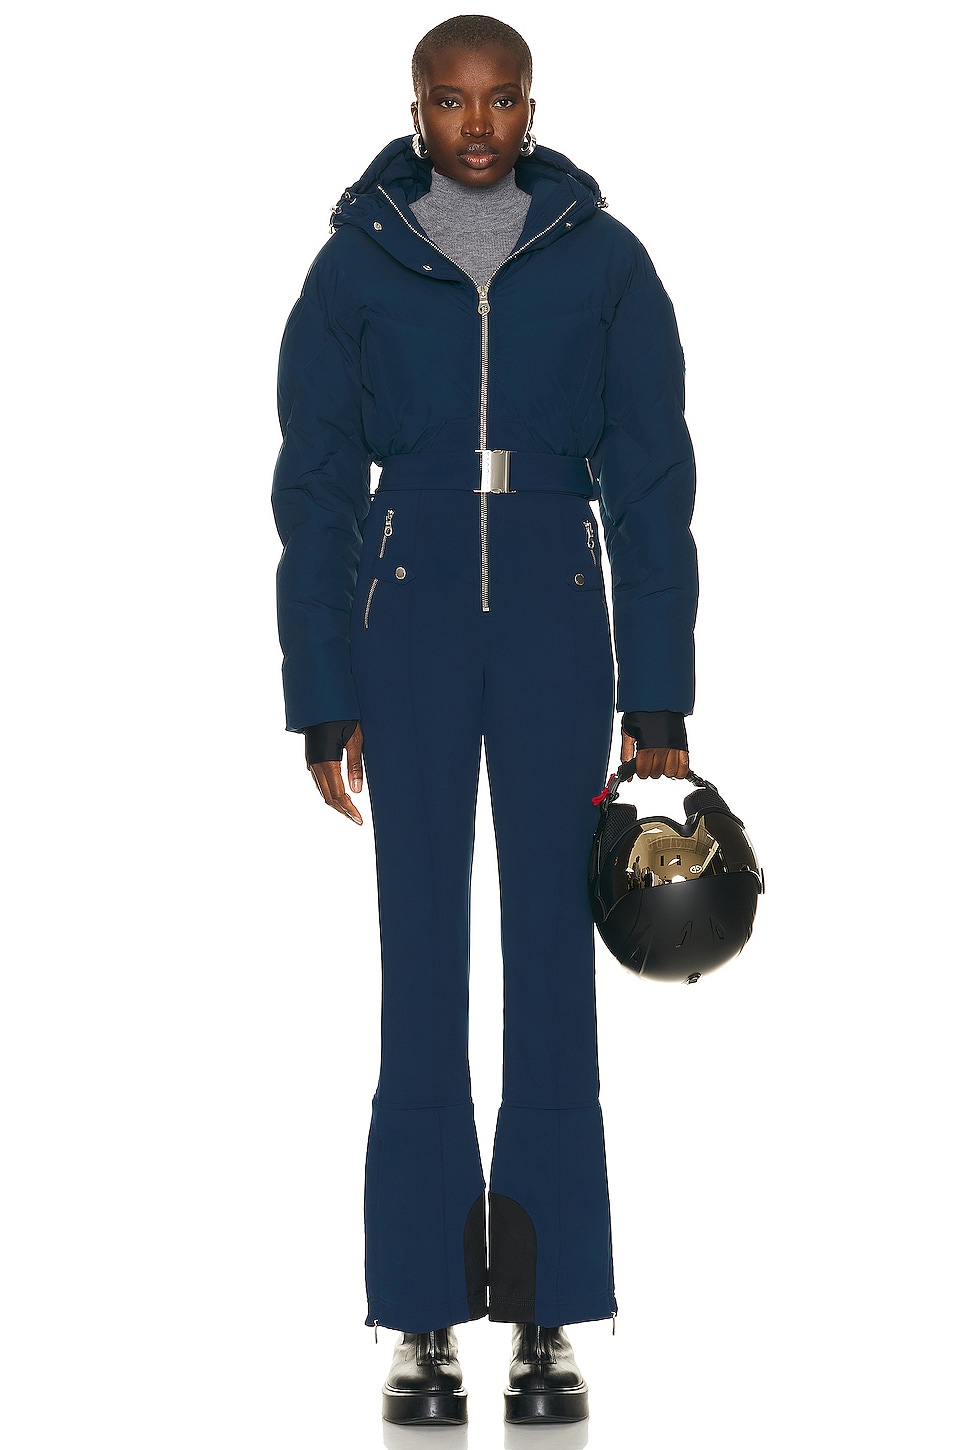 Image 1 of CORDOVA Ajax Ski Suit in Marine